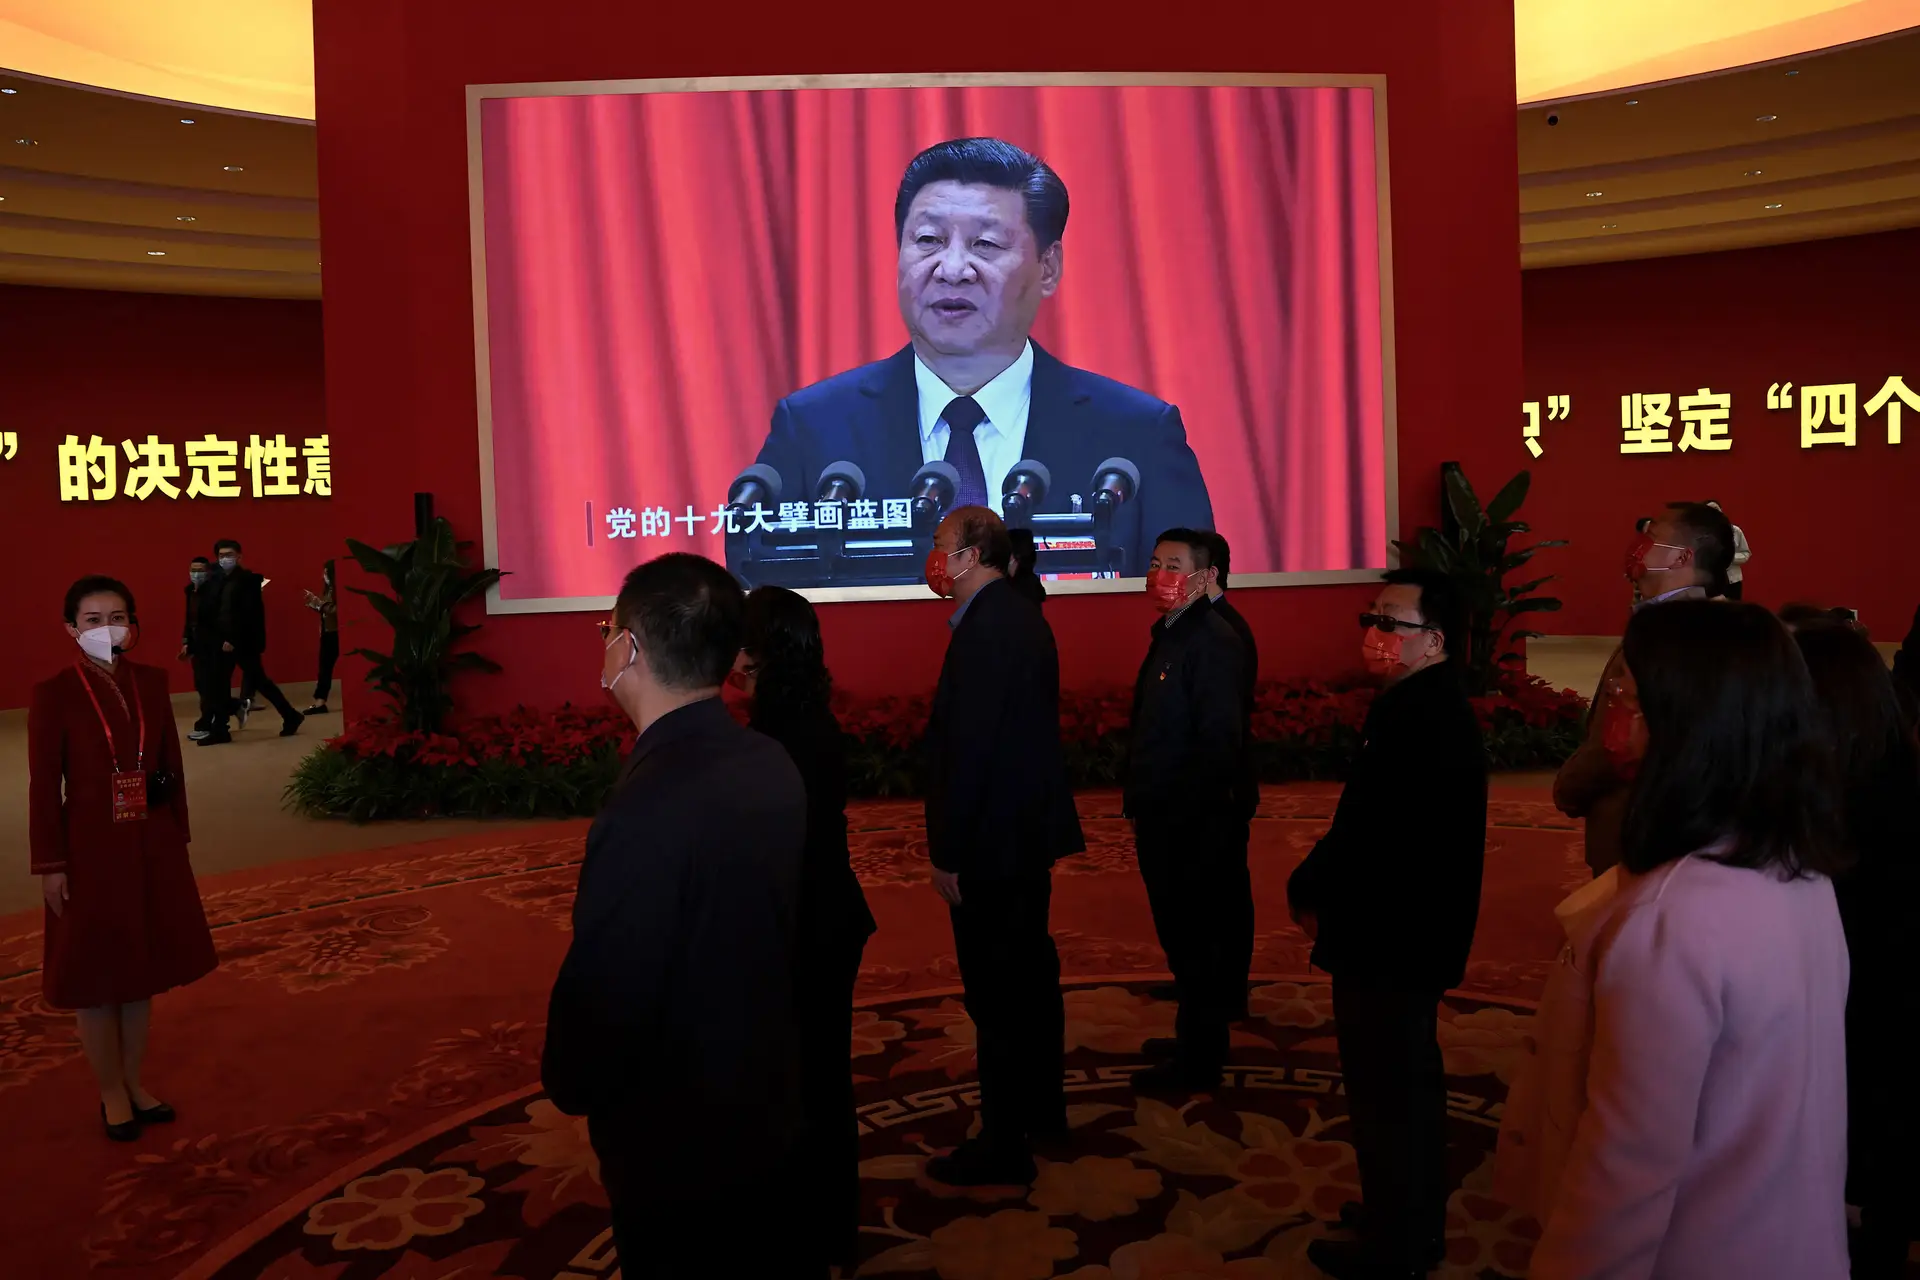 Vídeos com discursos de Xi Jinping são exibidos numa exposição em Pequim com o tema “Avançando na Nova Era” 